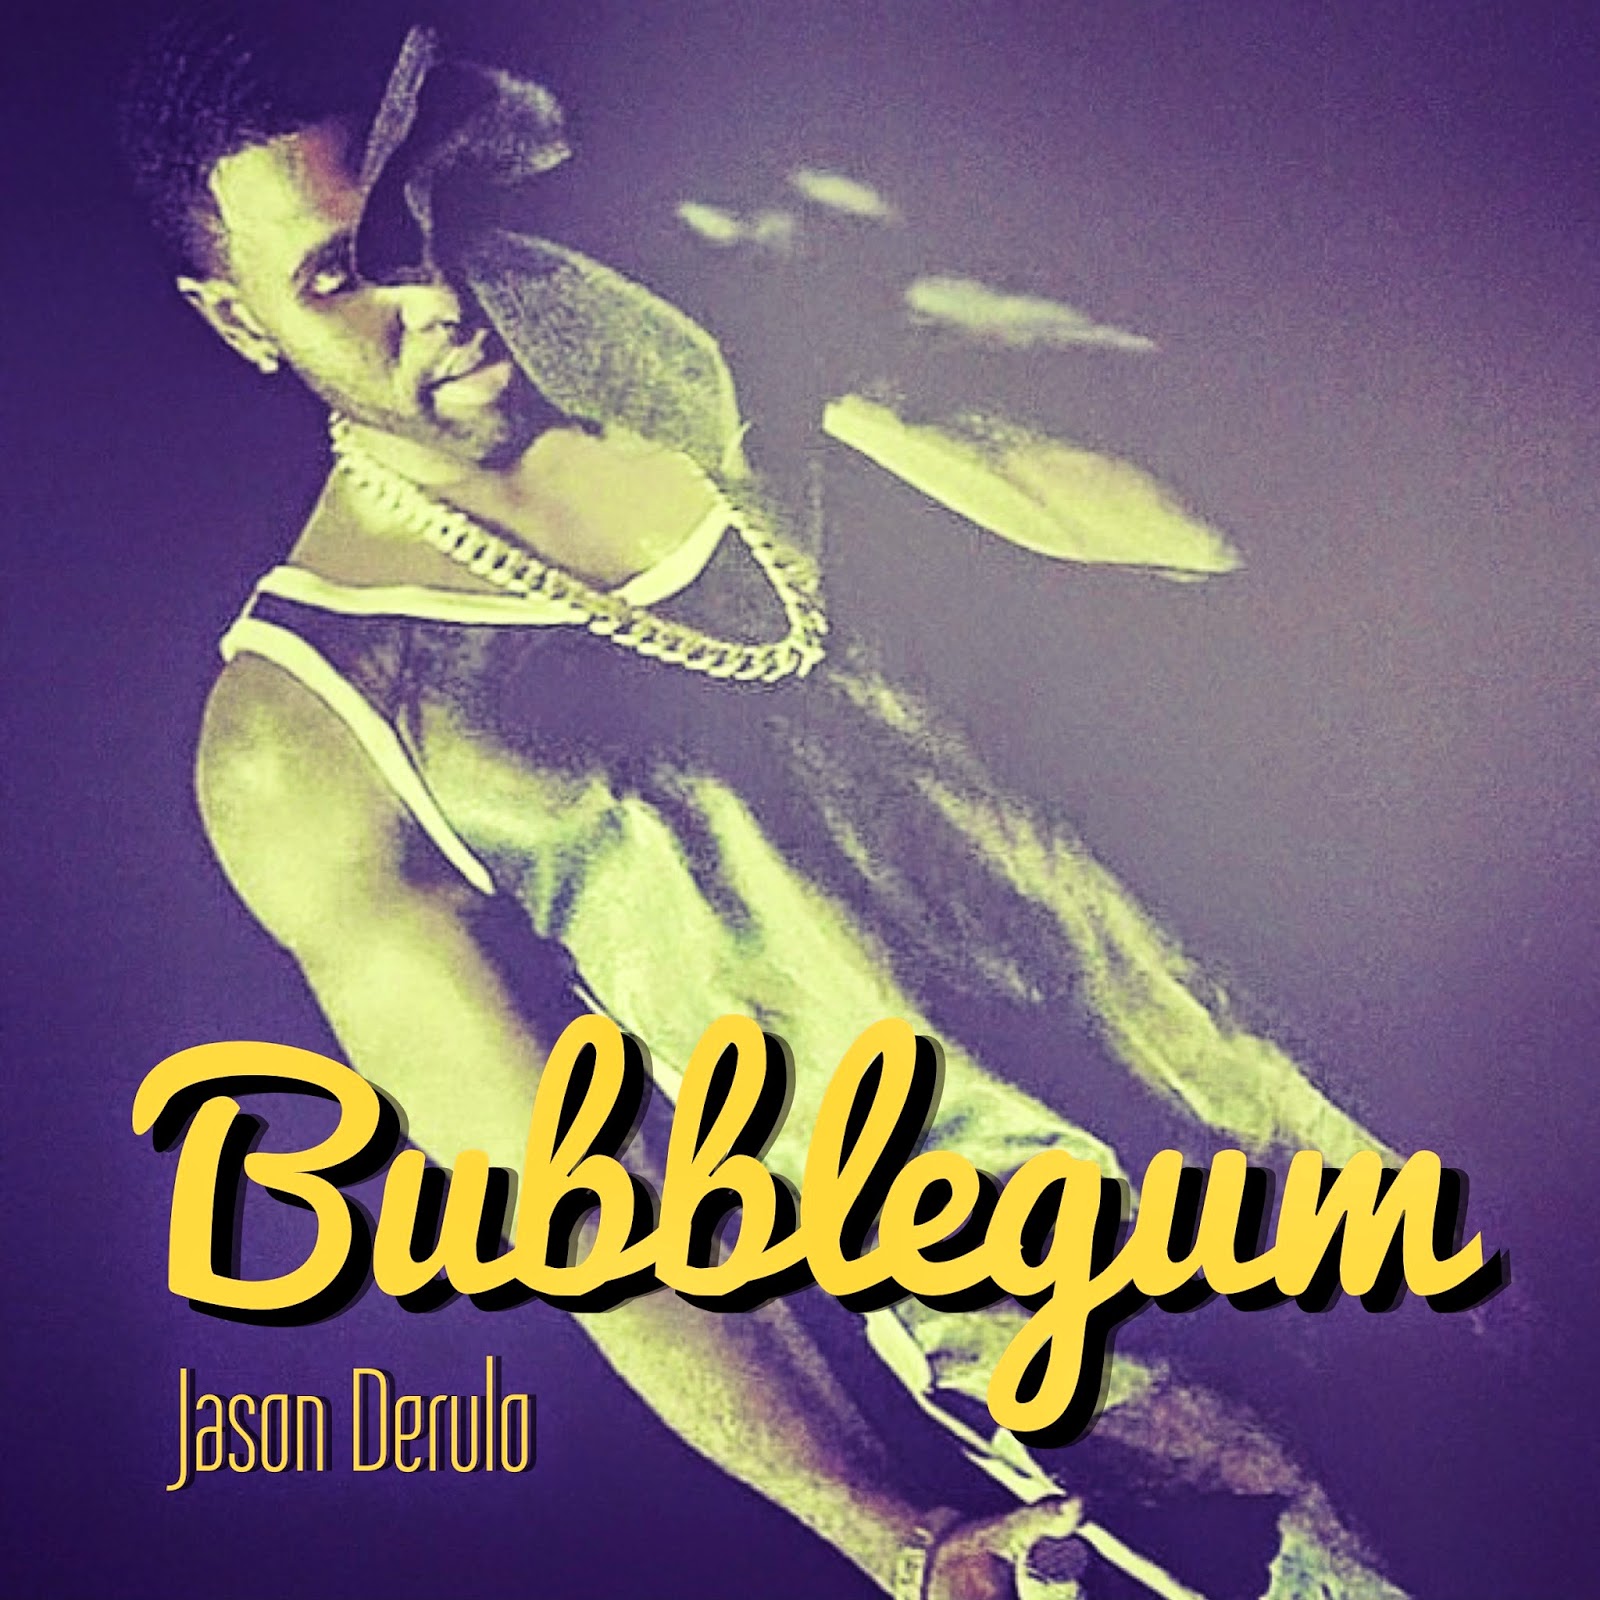 Jason Derulo - Bubblegum